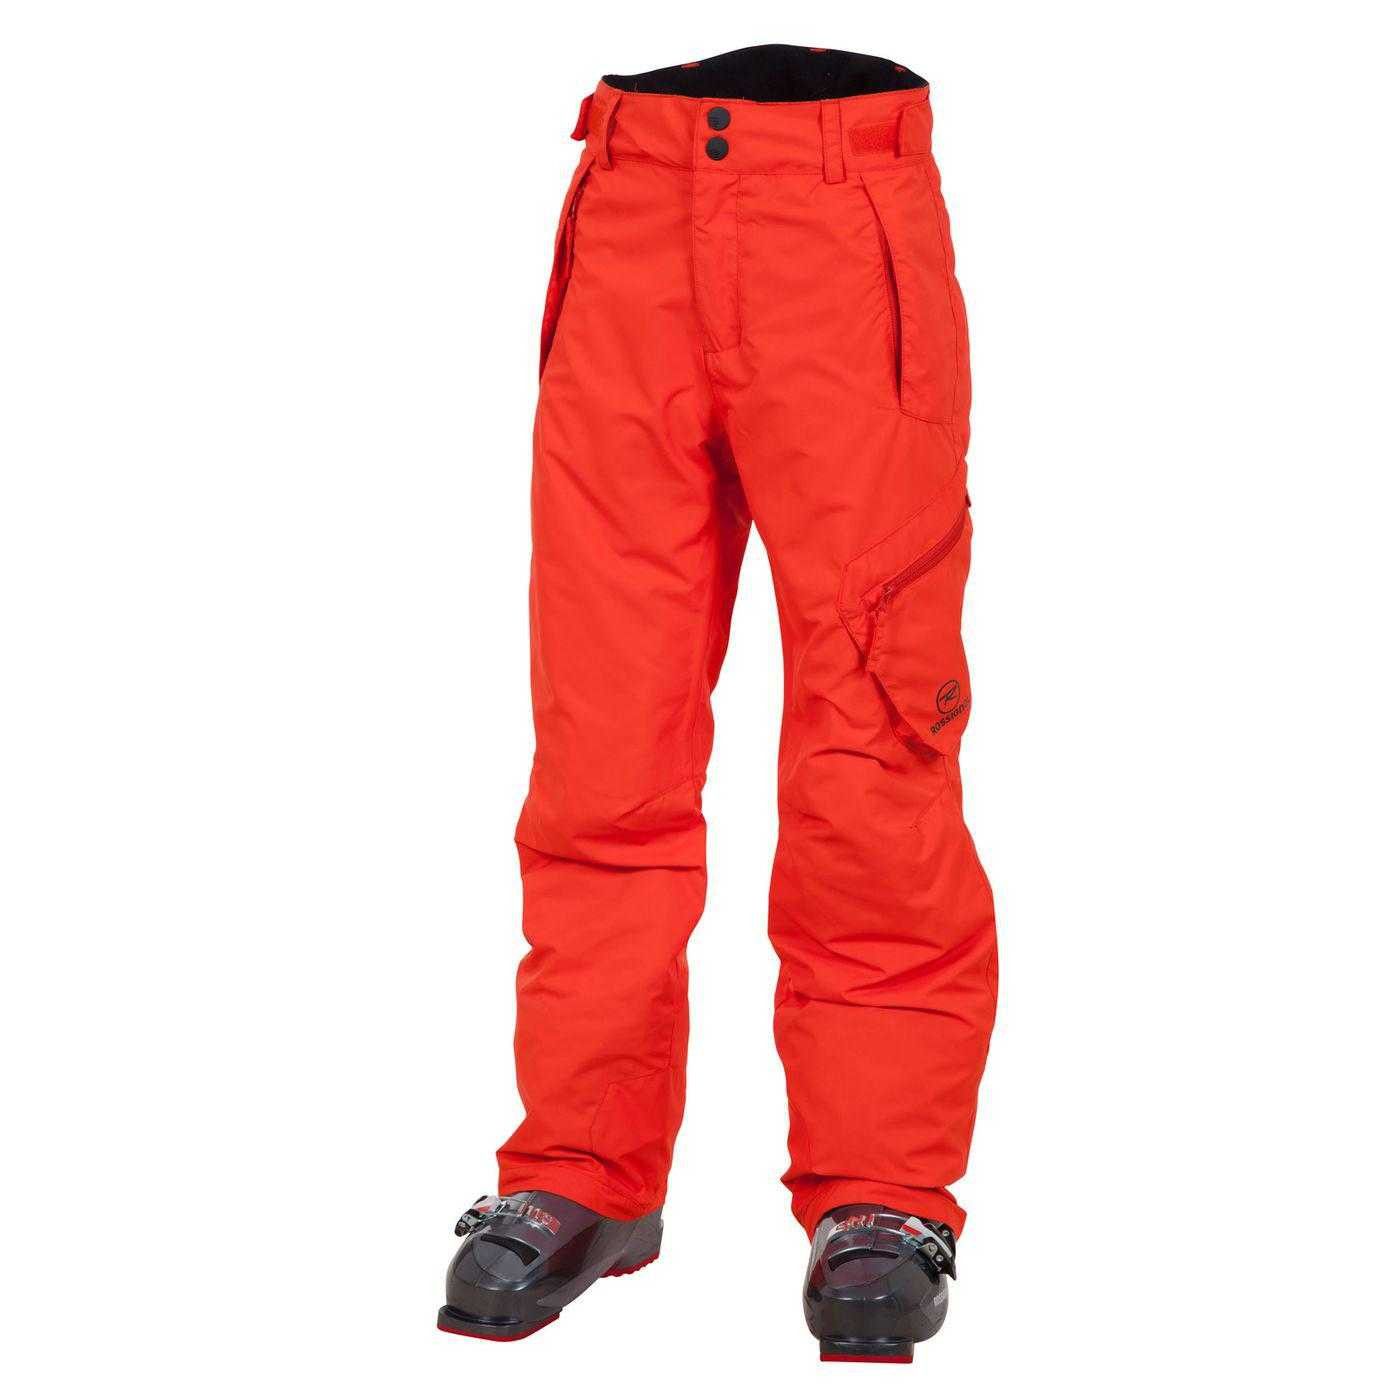 Pantalon de ski junior boy cargo pant rouge taille 10